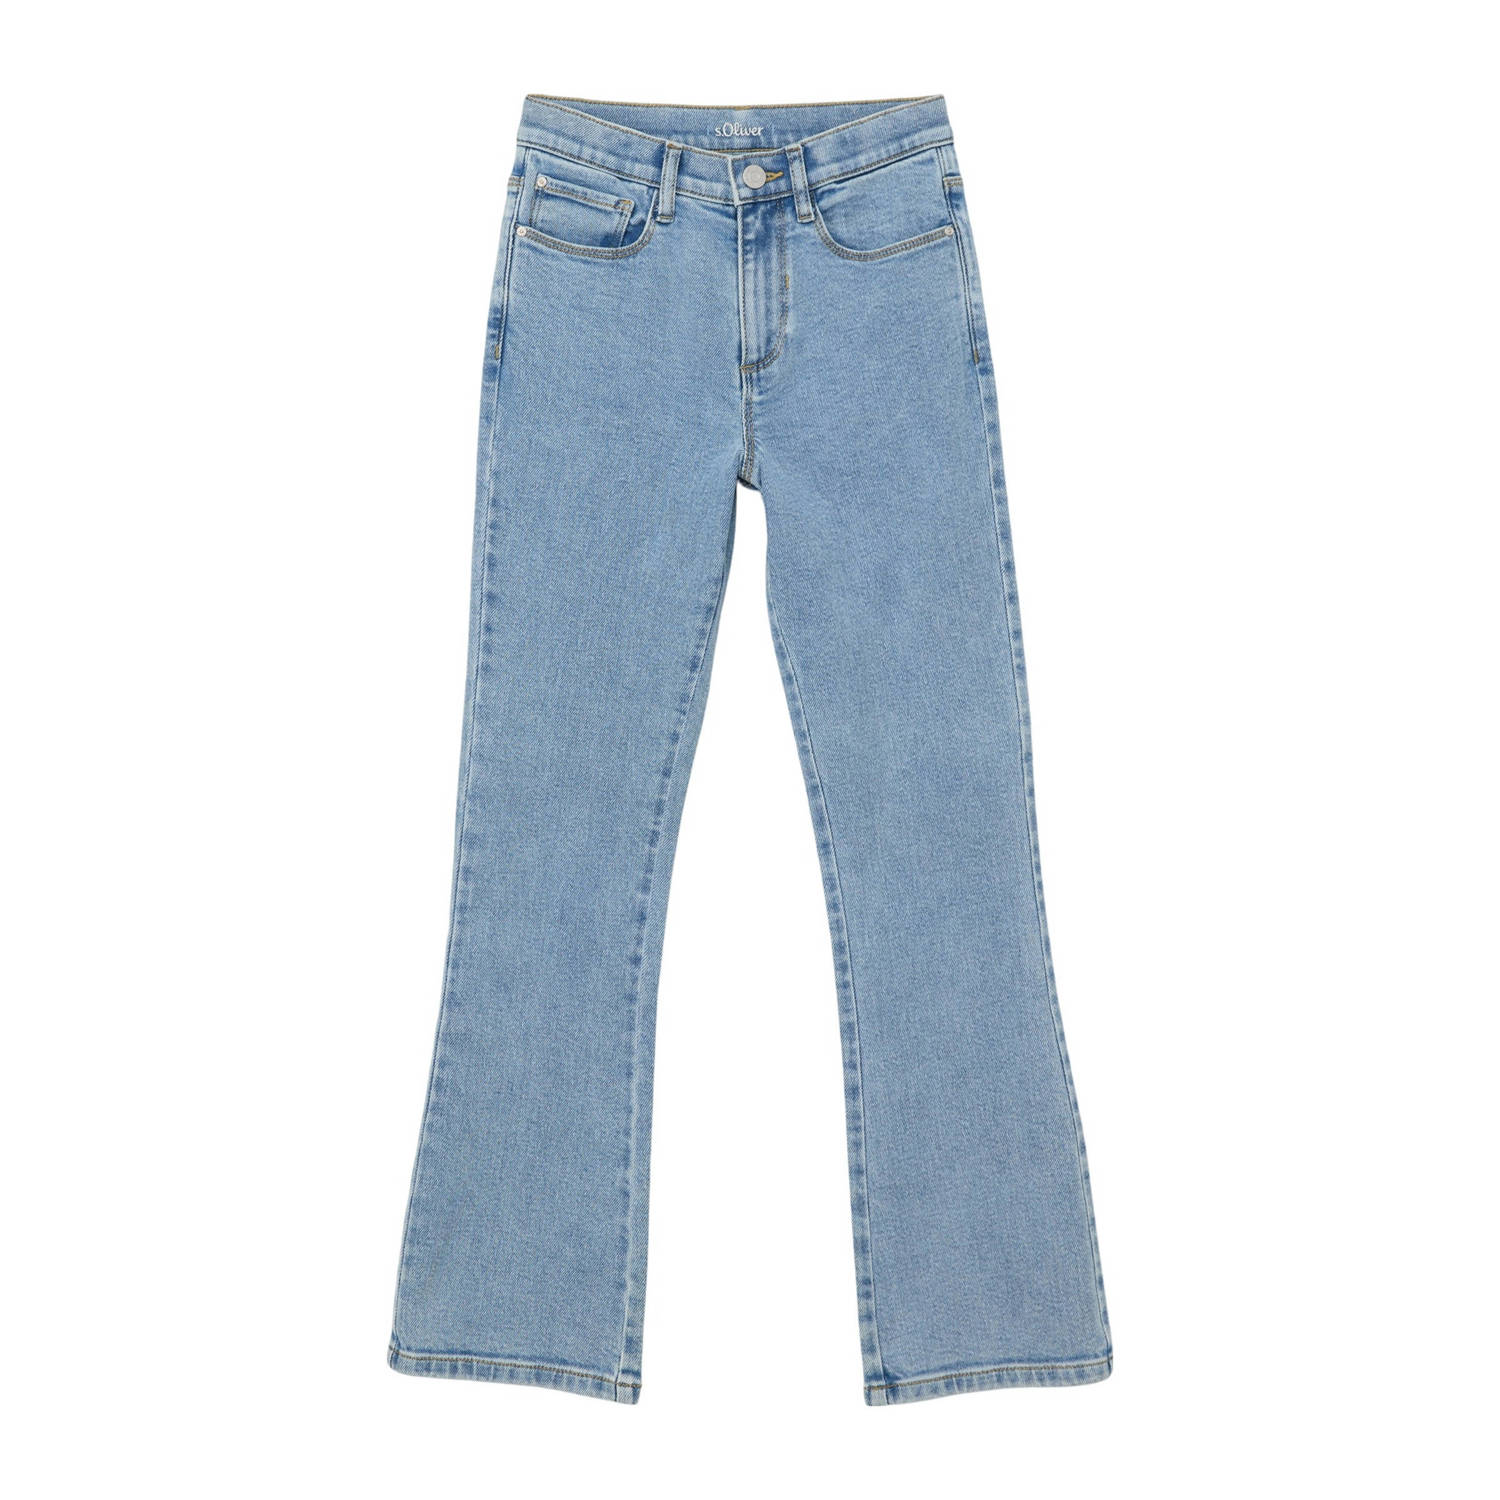 S.Oliver flared jeans light denim Blauw Meisjes Stretchdenim Effen 134